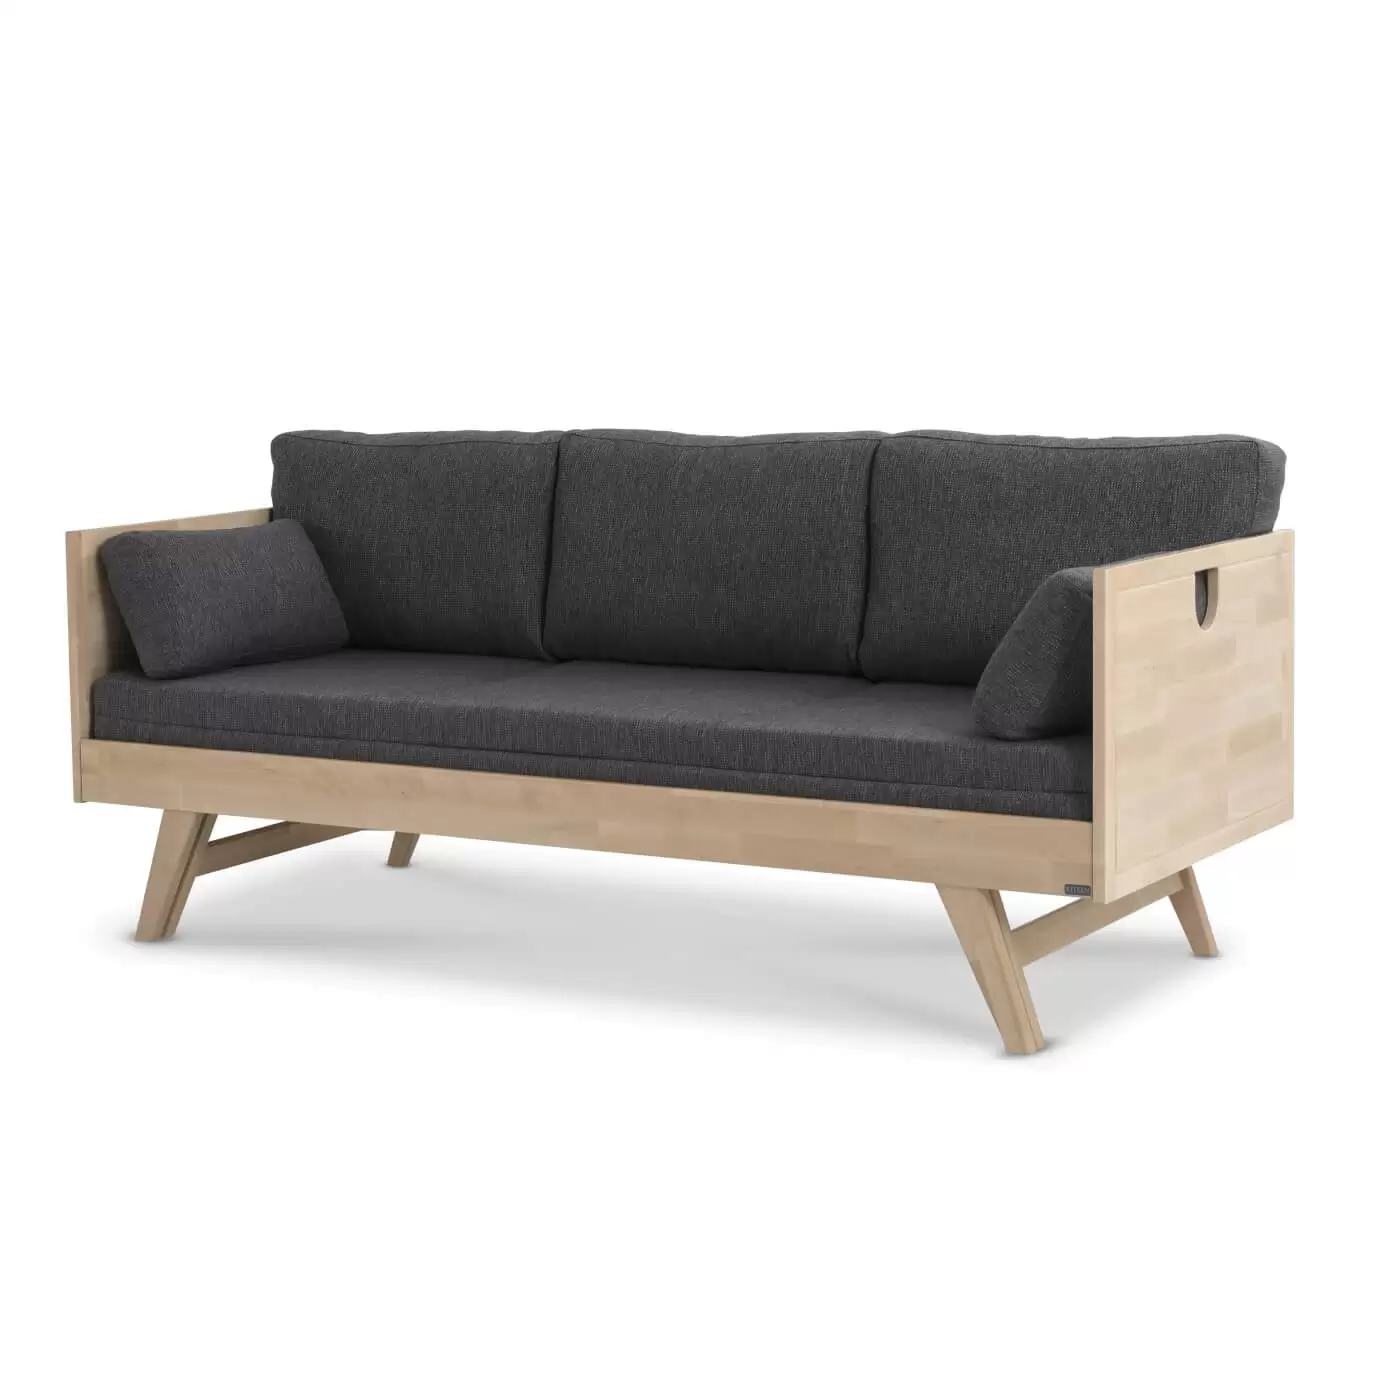 Sofa drewniana NOTTE rozkładana na wysokich nóżkach z brzozy skandynawskiej z szarym materacem i 5 poduszkami. Nowoczesne minimalistyczne wzornictwo